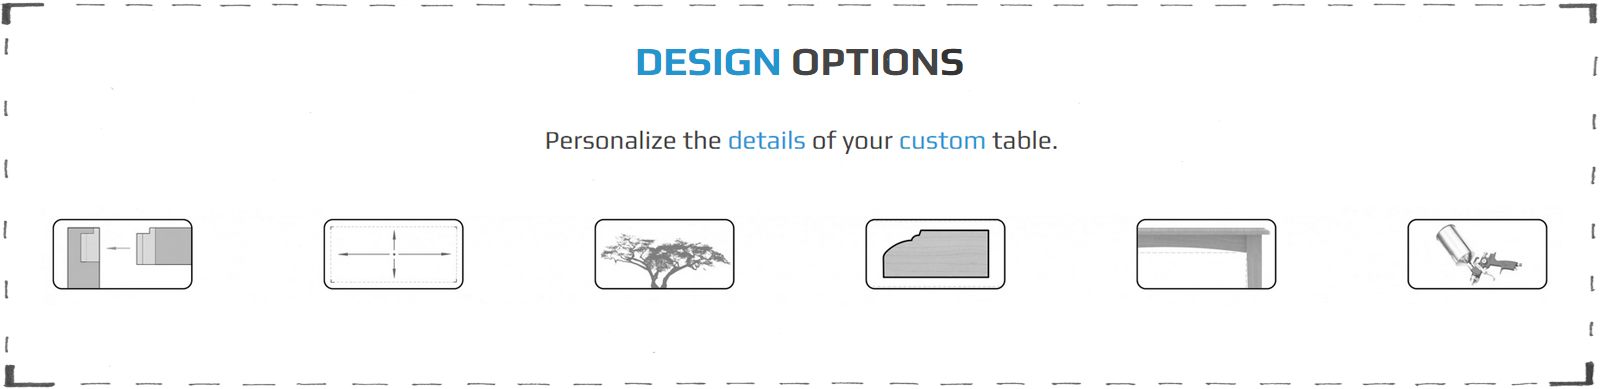 design-options_hp_f